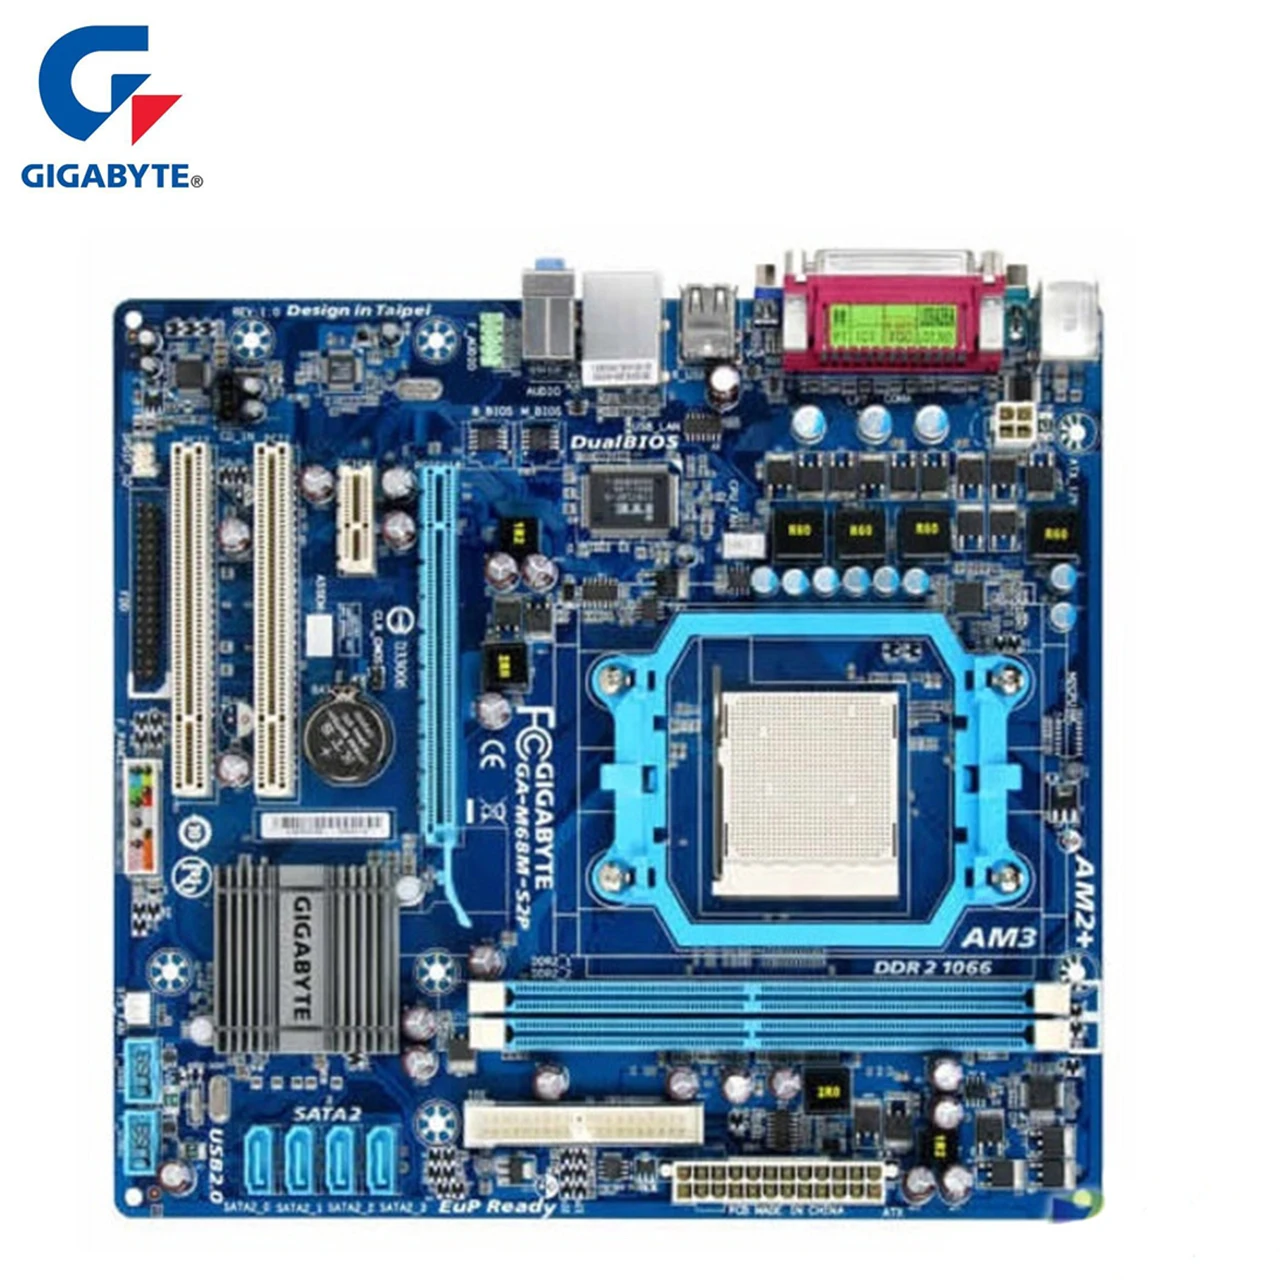 Материнская плата Gigabyte GA-M68M-S2P DDR2 8GB Socket AM2/AM2+/AM3 M68M S2P настольная системная плата Интегрированная графика